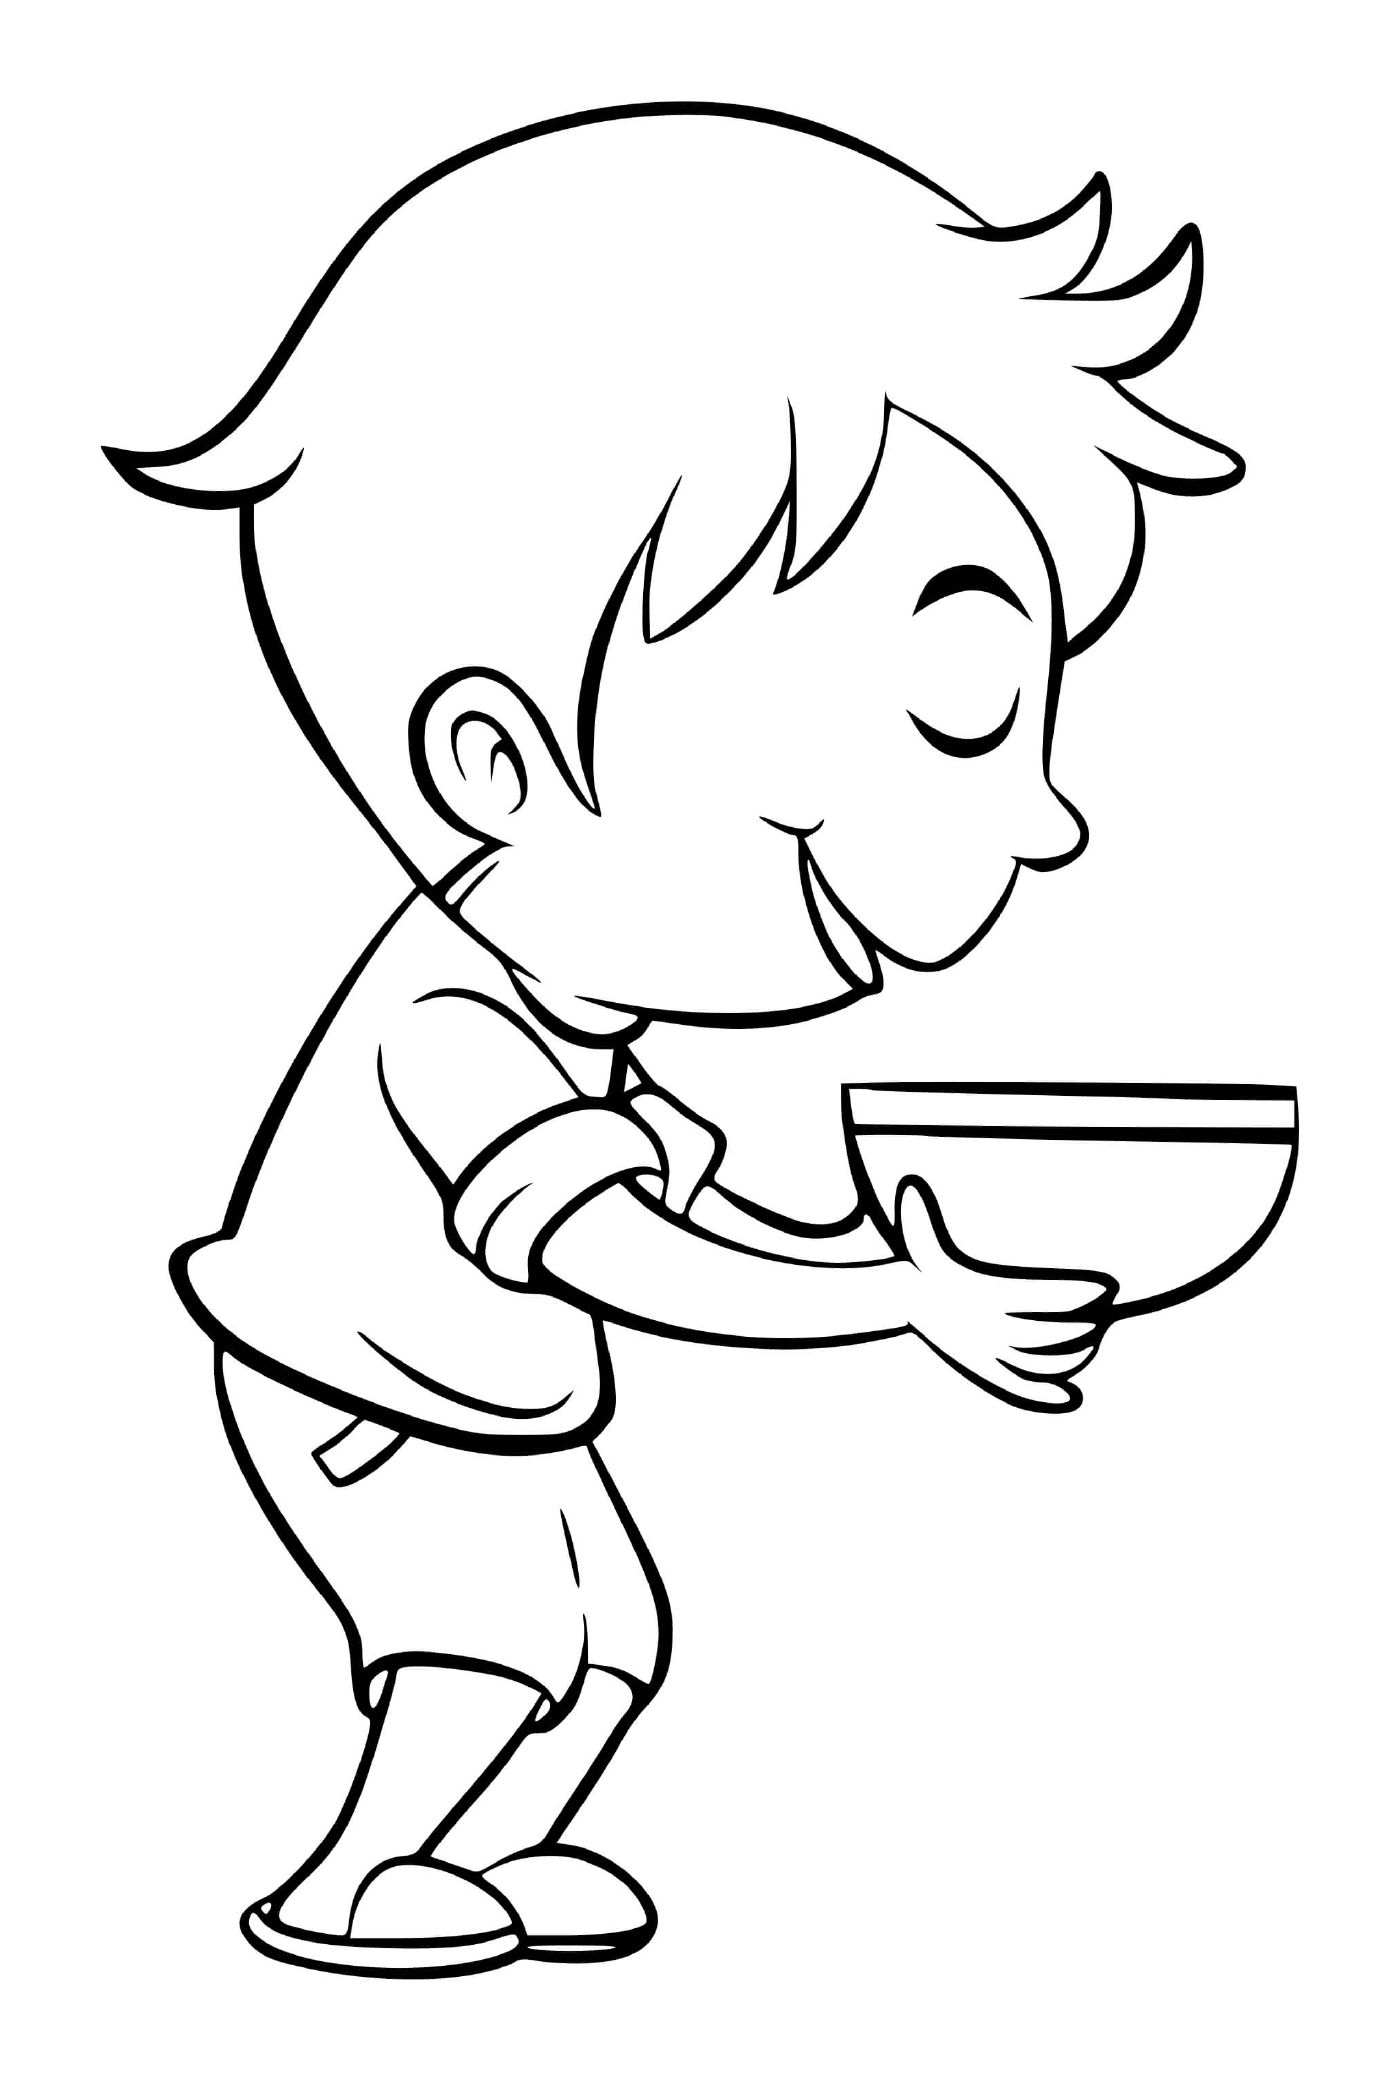  صبي يأكل القرنكليه مع المتعة 